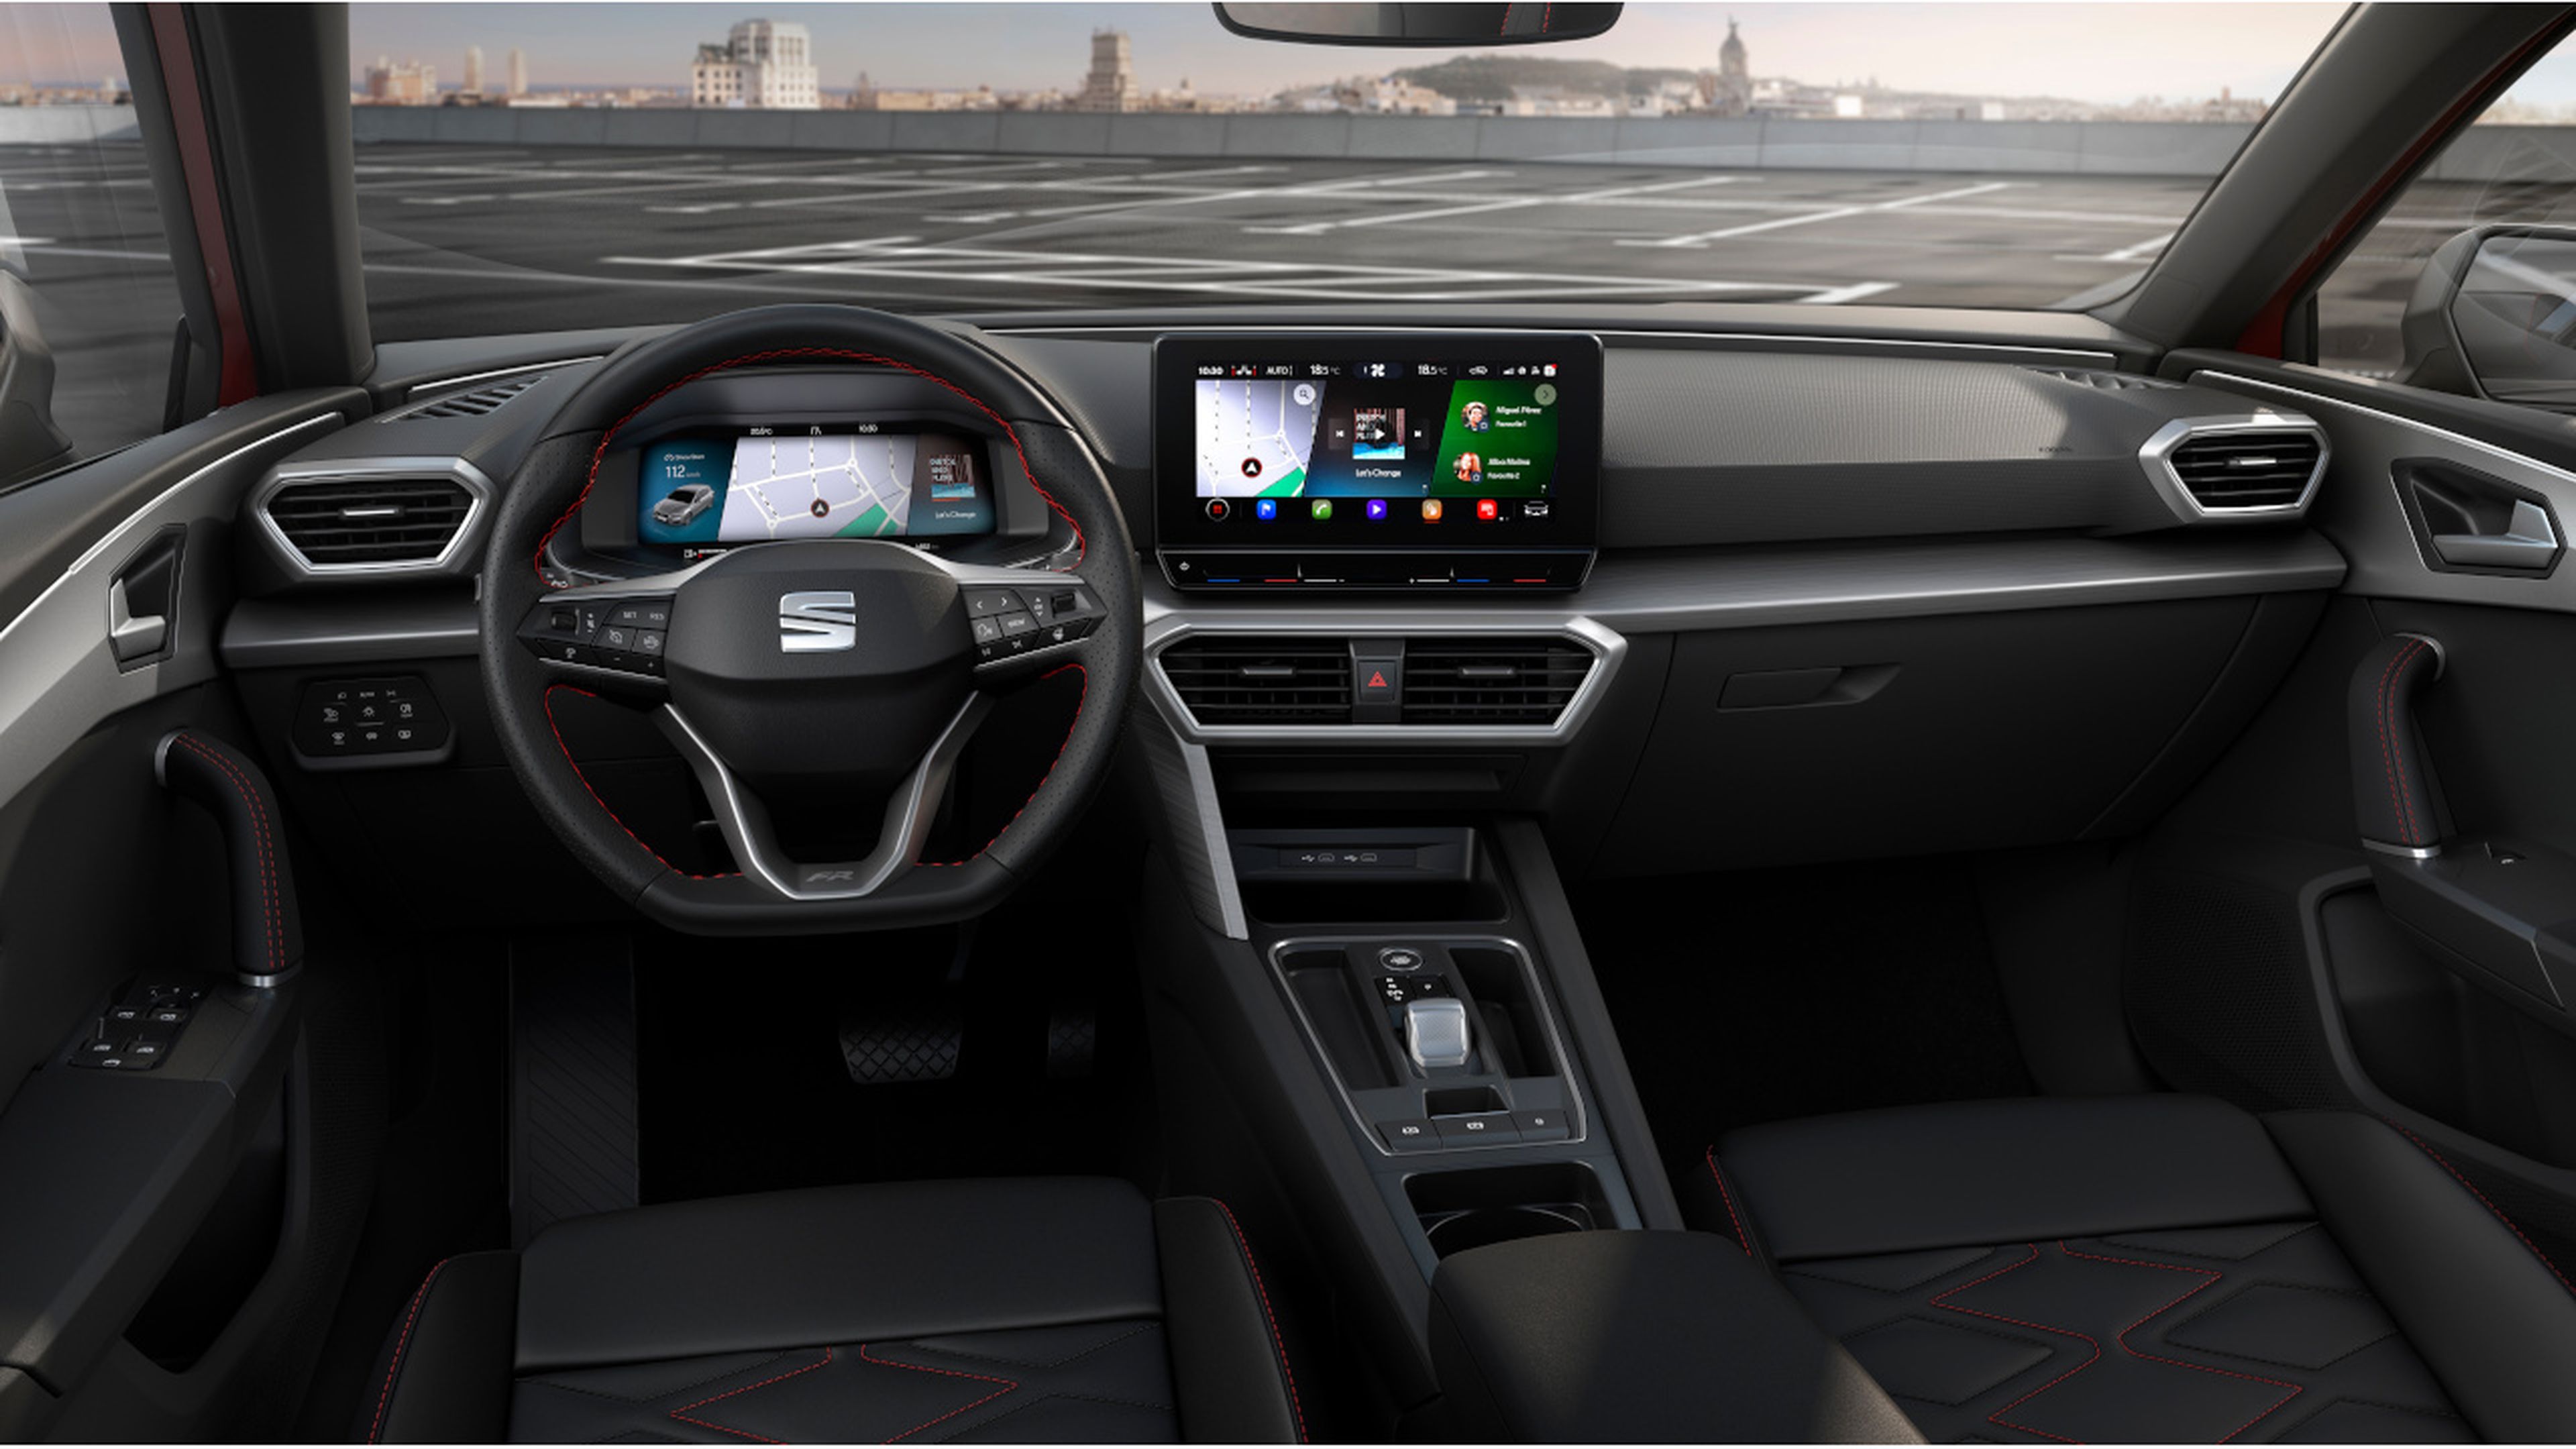 El puesto de conducción del nuevo Seat León 2020 es ahora mucho más digital.